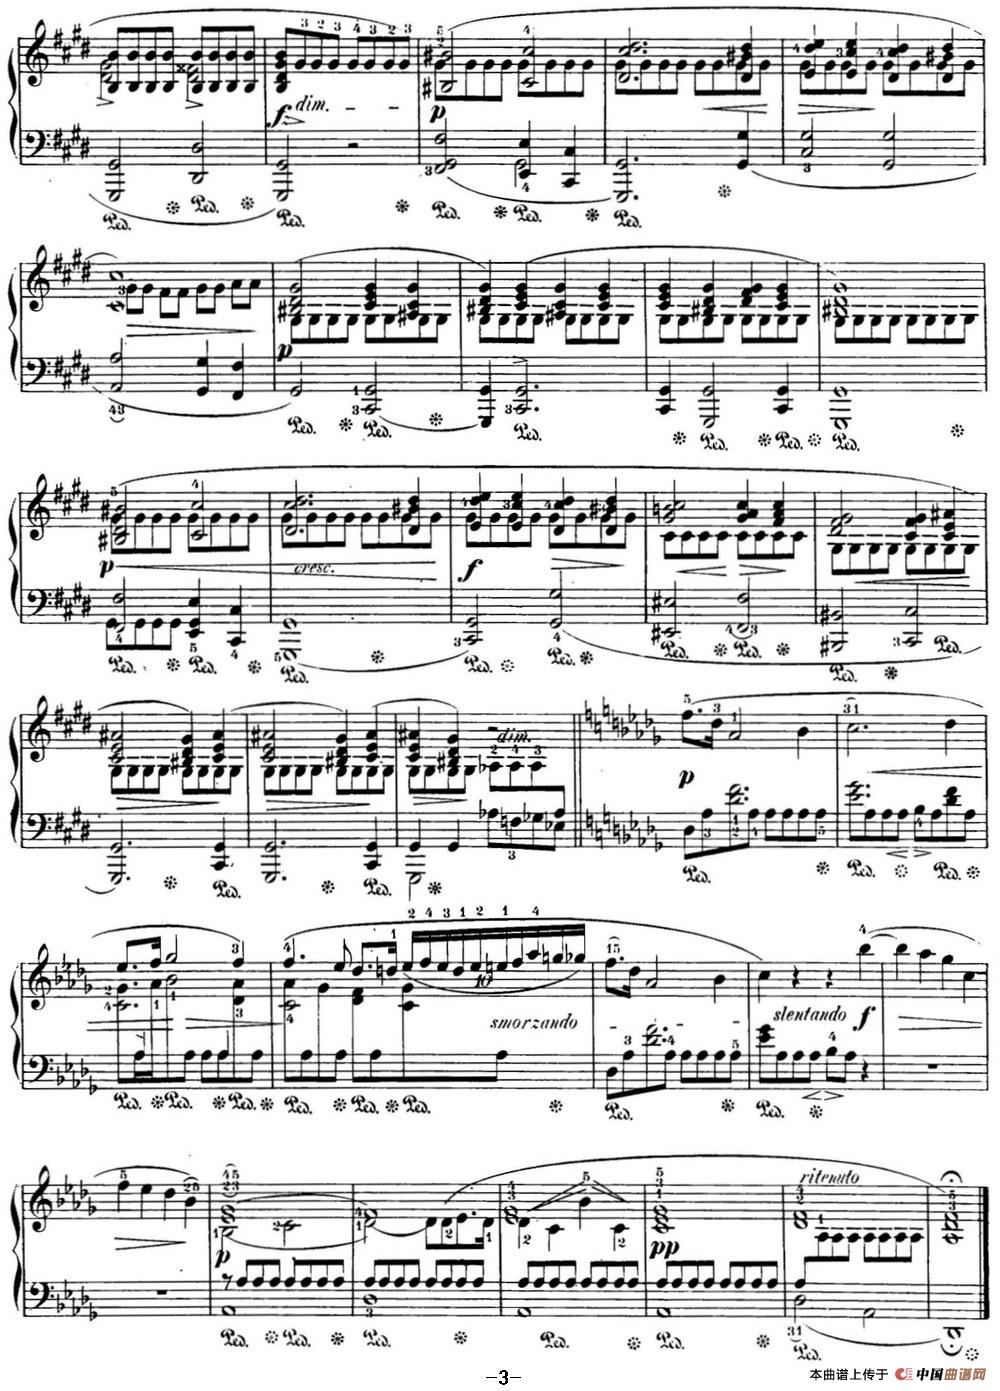 《肖邦 24首钢琴前奏曲 Op.28 No.15 降D大调 雨滴》钢琴曲谱图分享